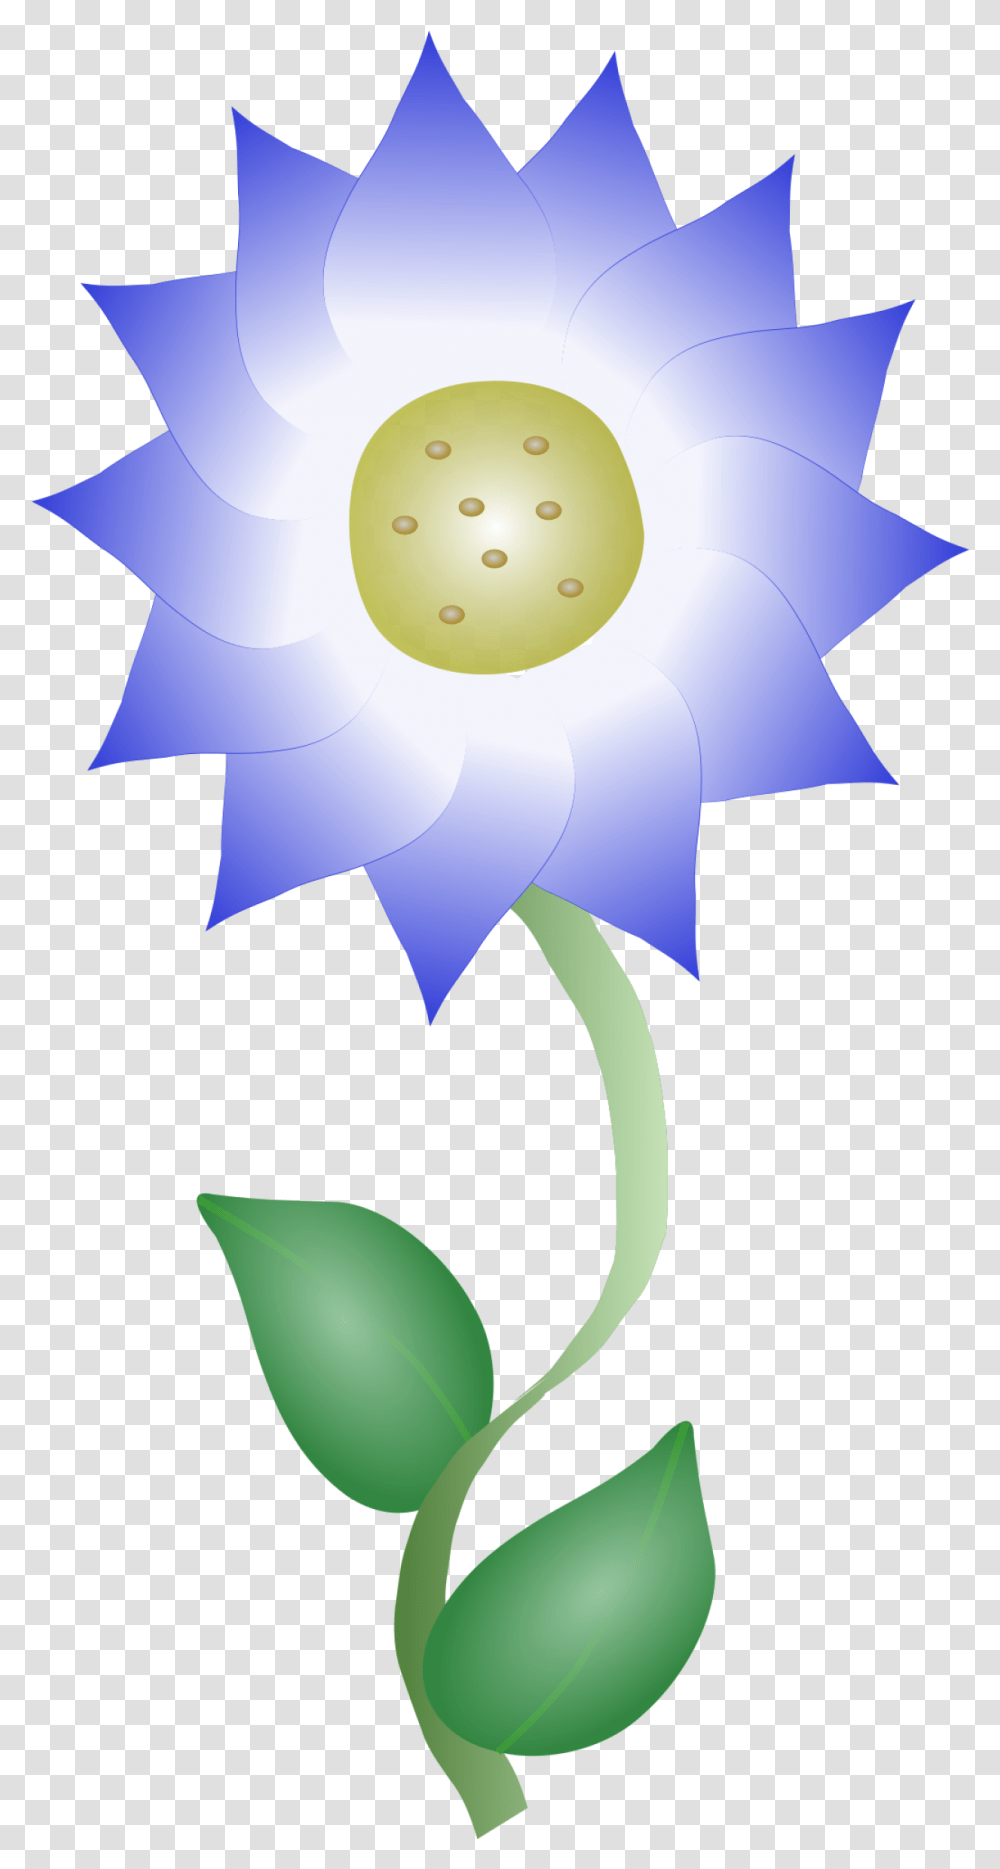 Blue Flower Clip Arts For Web Clip Arts Free Blue Flower Clip Art, Plant, Petal, Daisy, Graphics Transparent Png